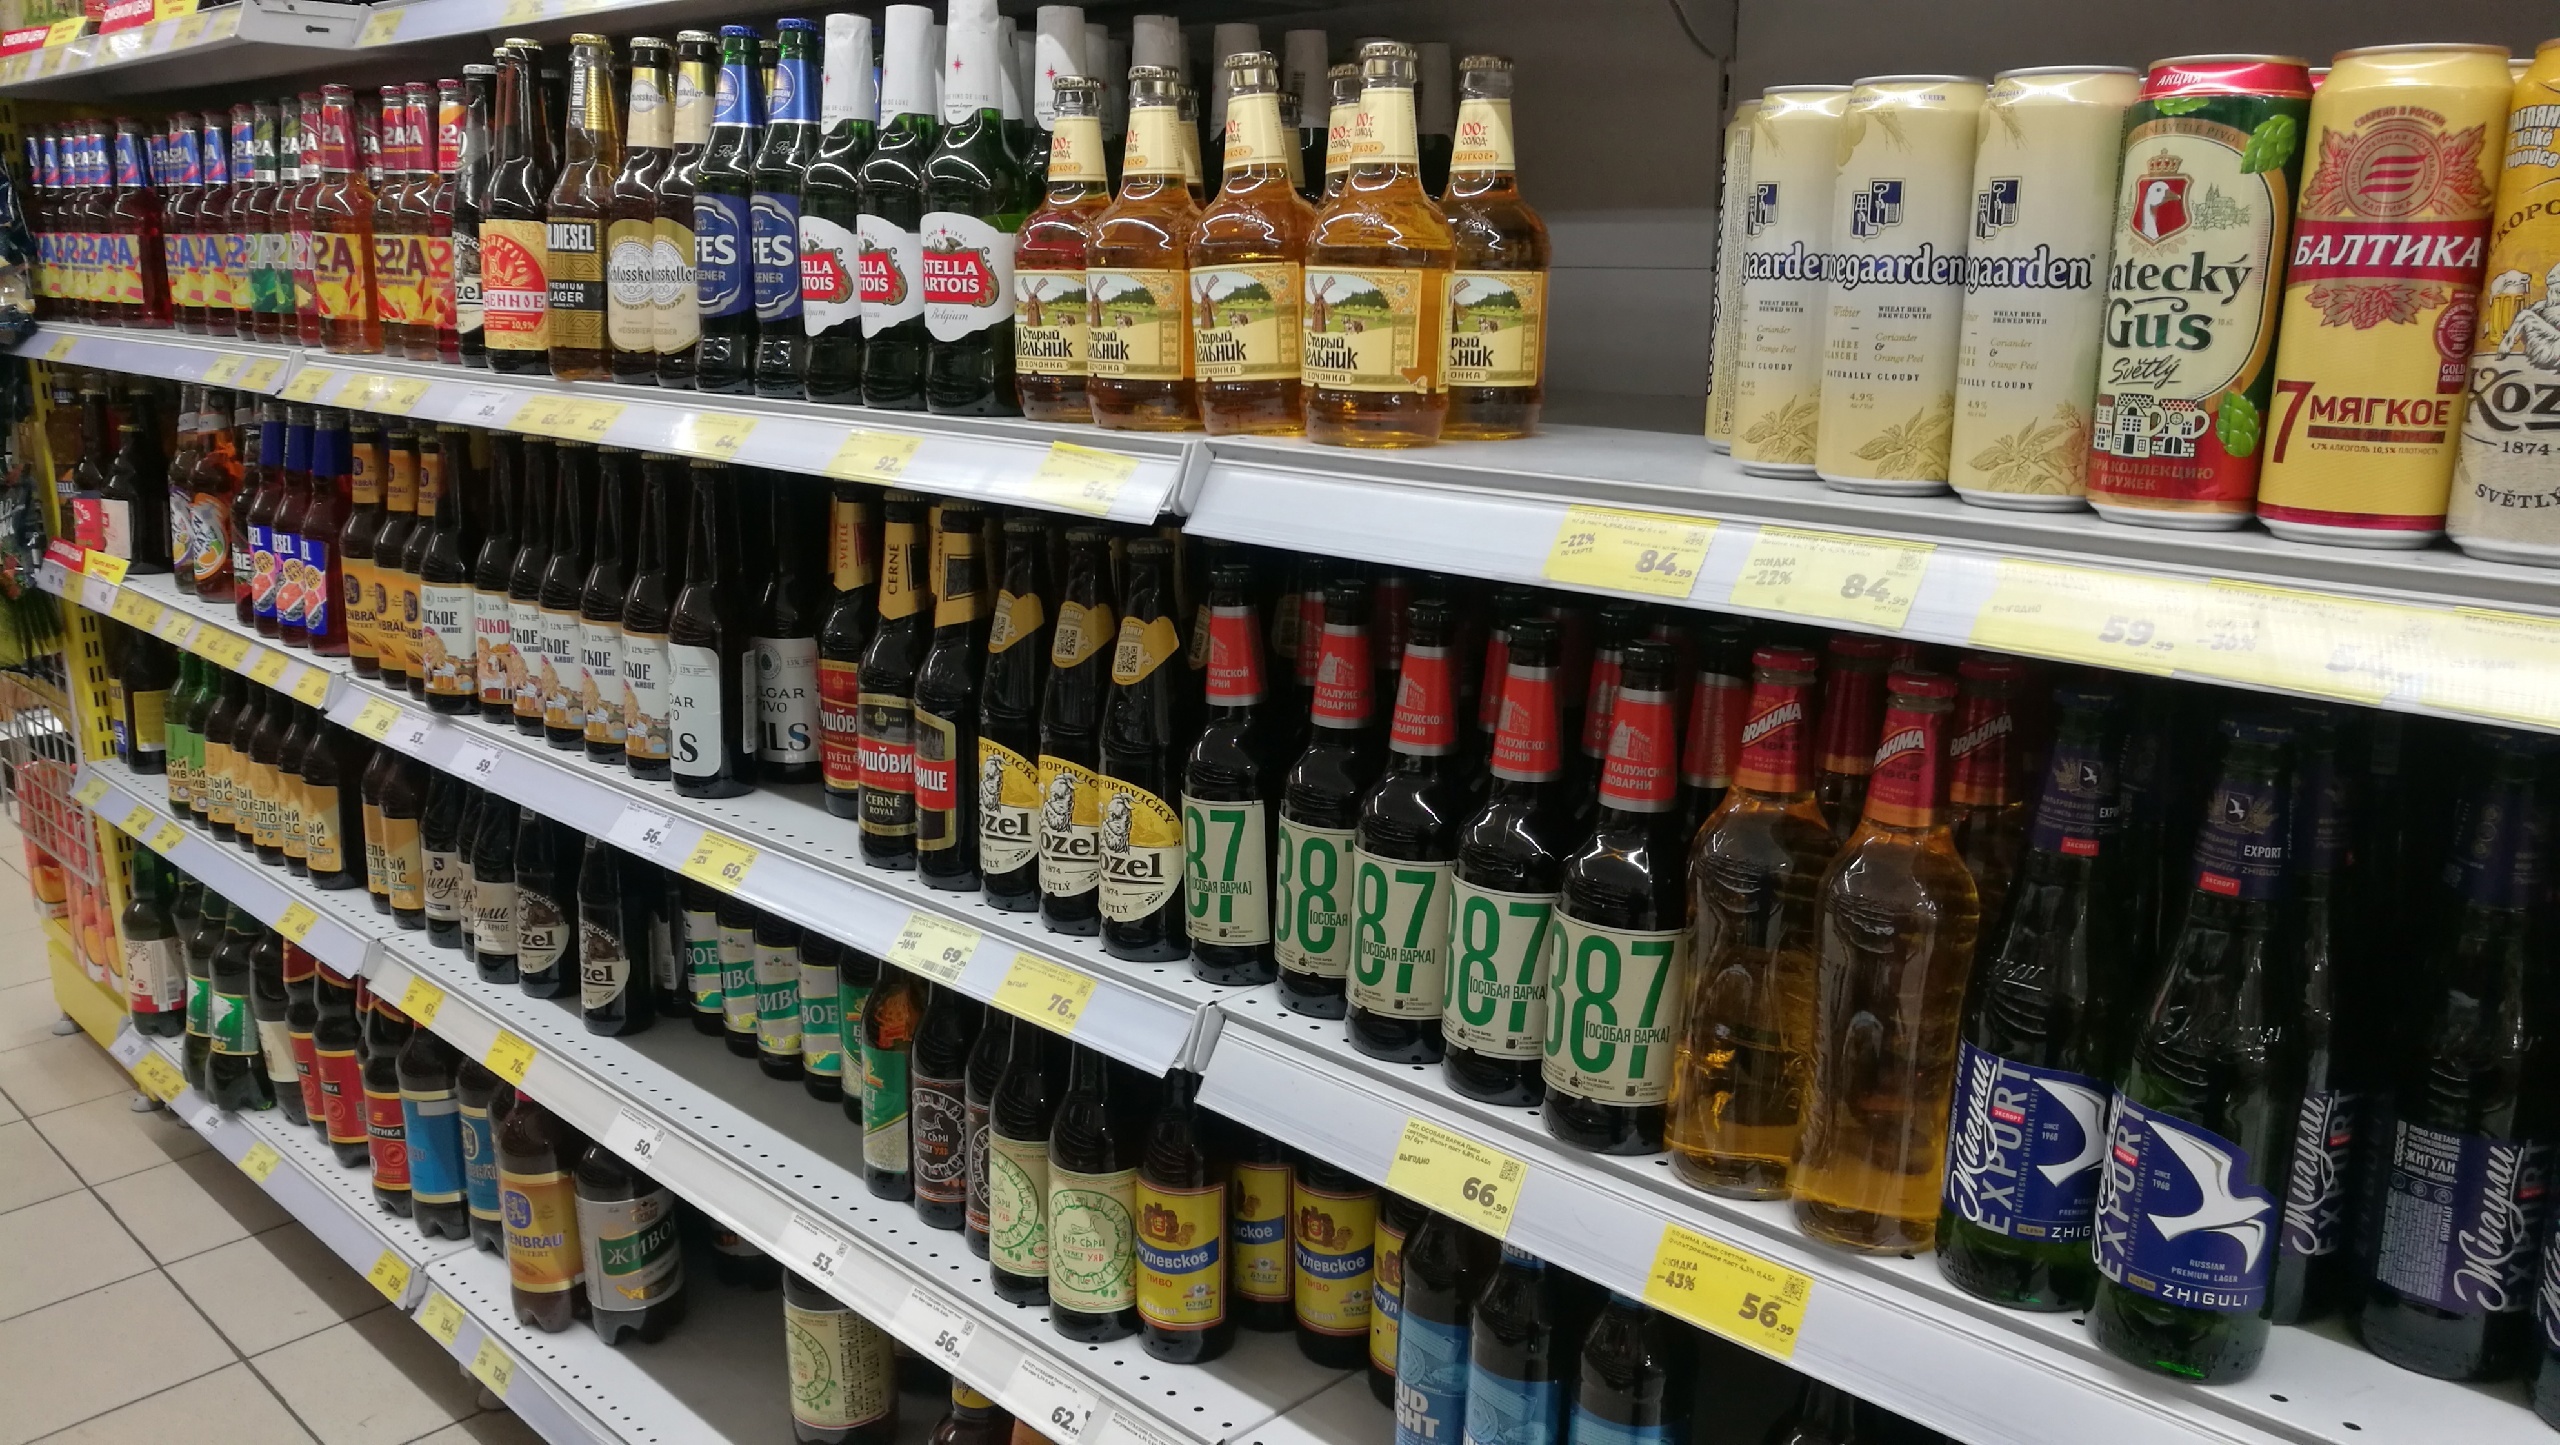 "Даже не пробуйте": Роскачество выявило самую худшую марку пива